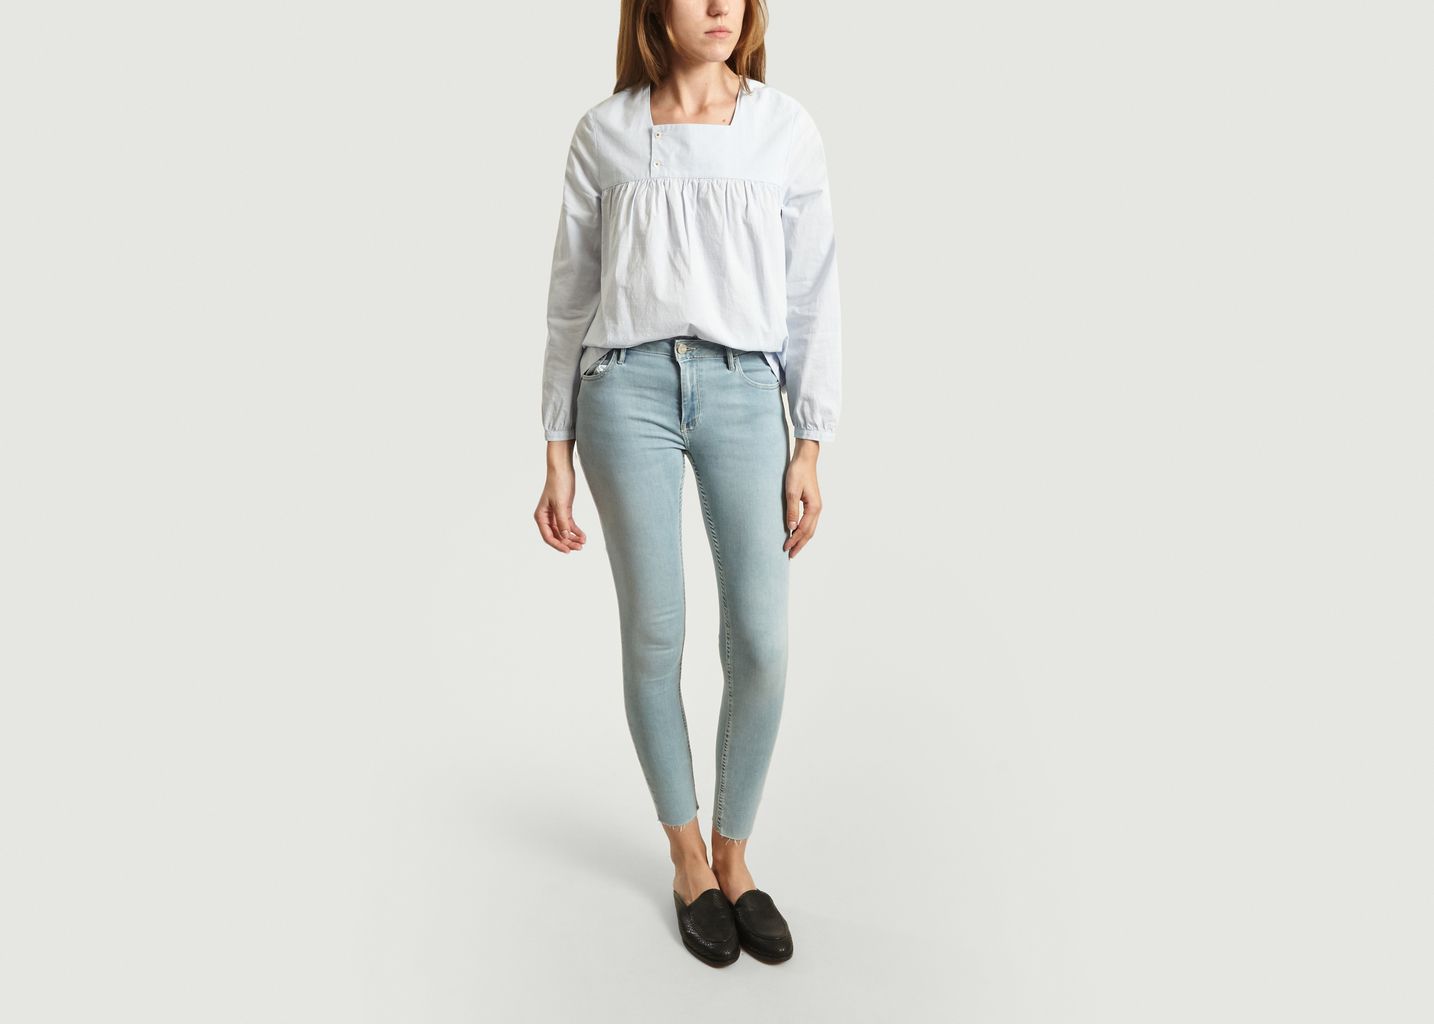 Lily 7/8 Length Skinny Jeans - Reiko